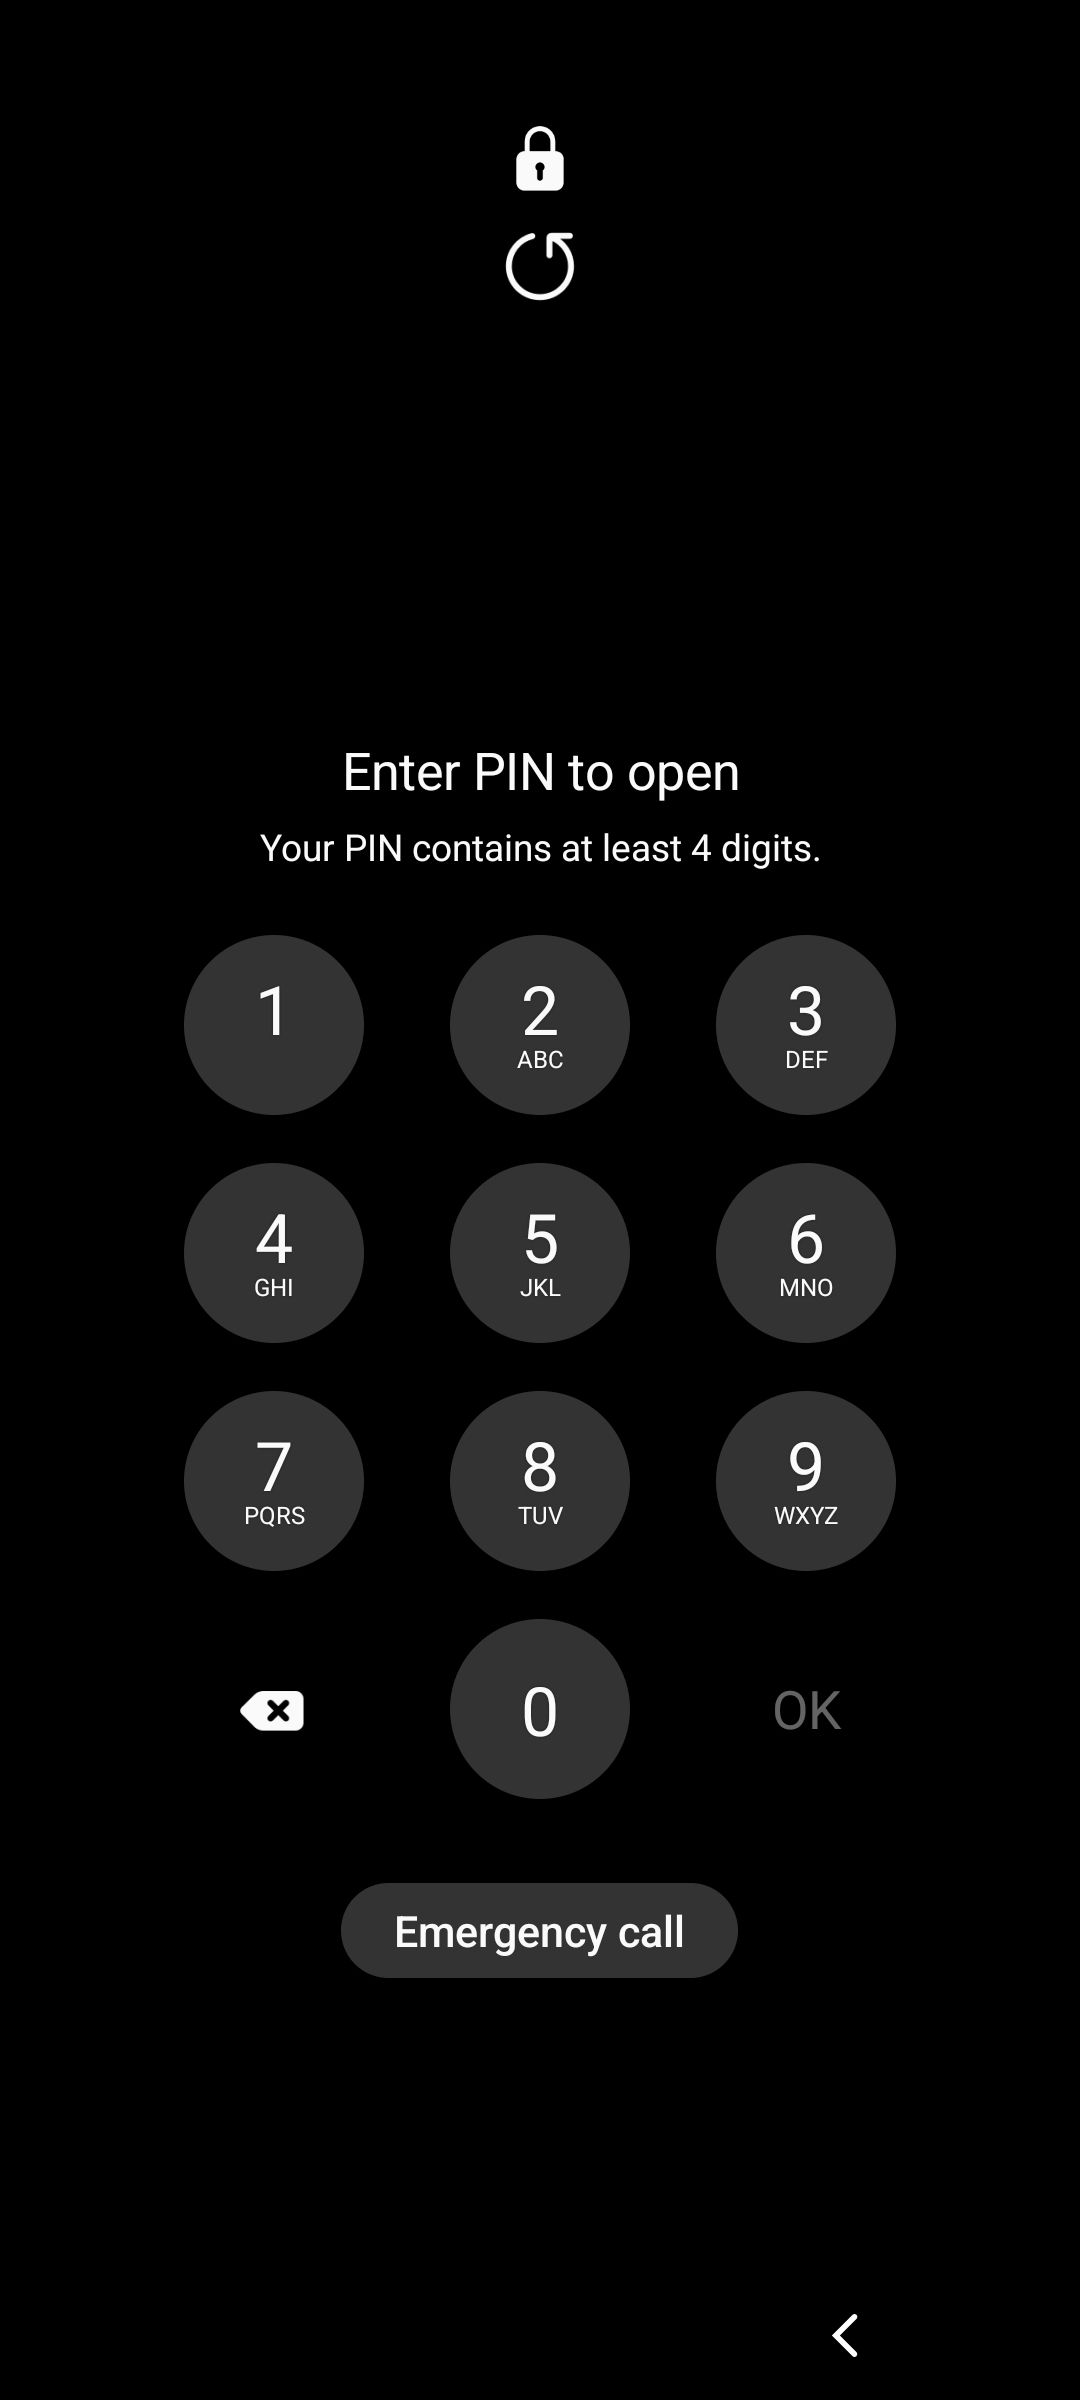 Enter PIN to open screen.